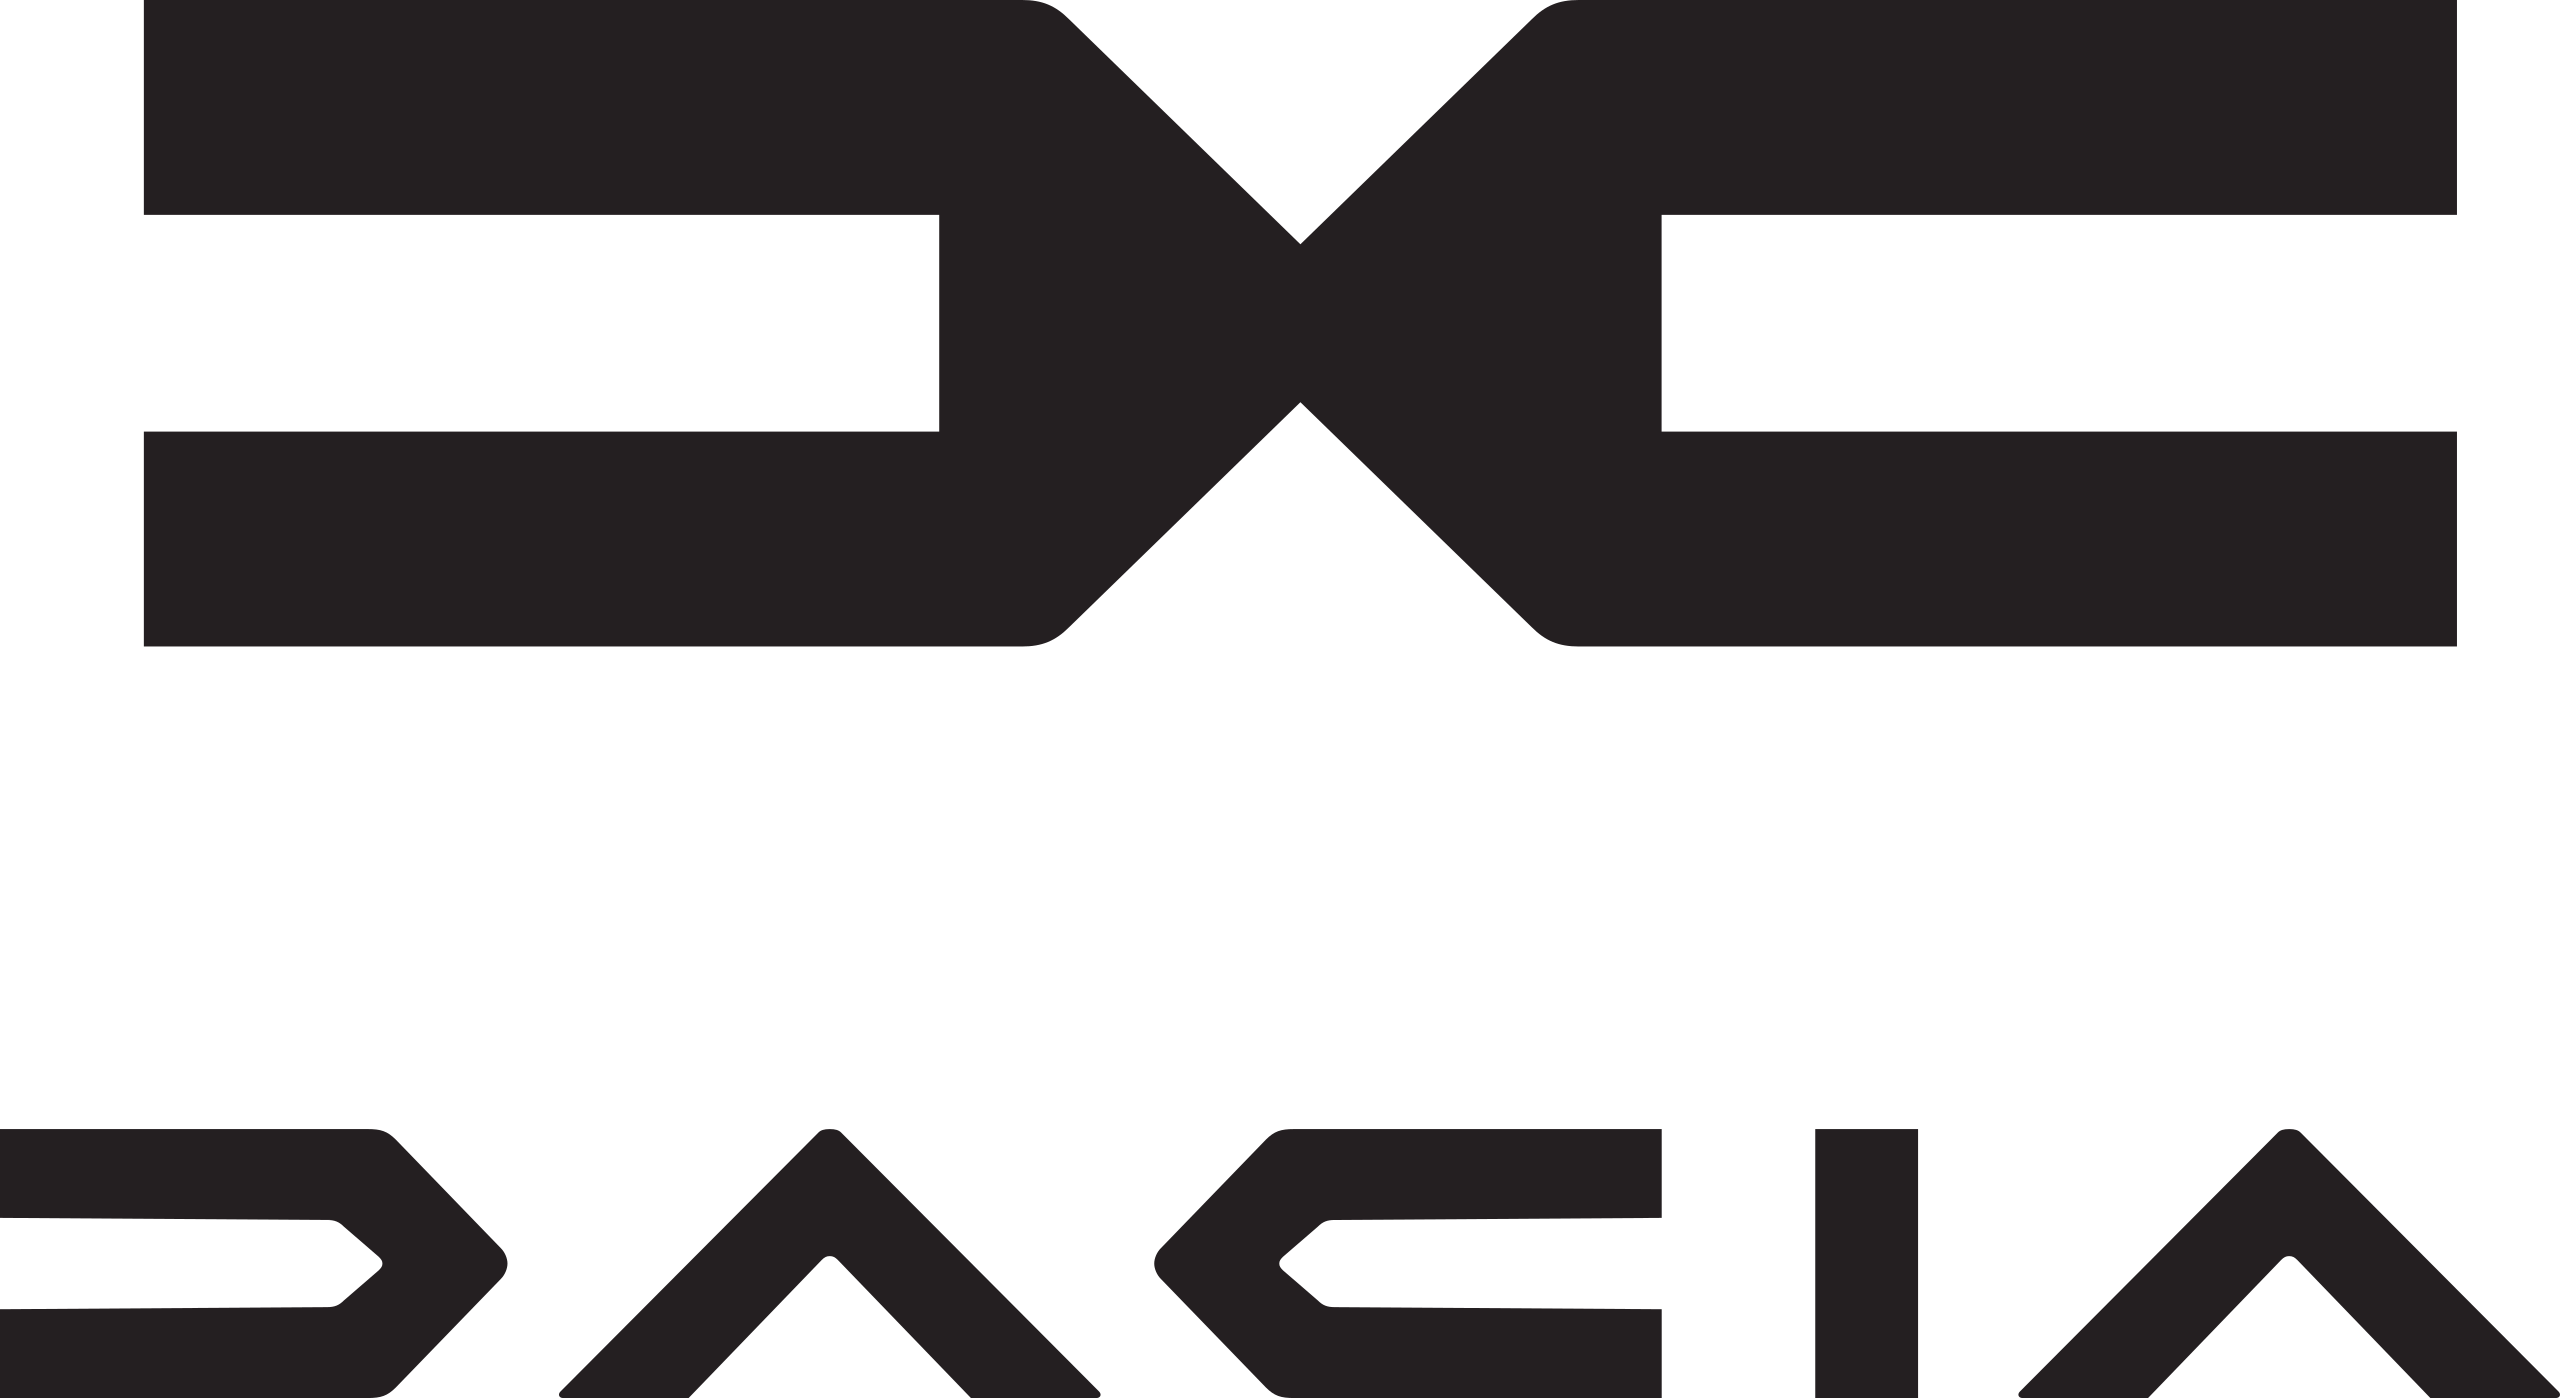 Logo de la marque Dacia